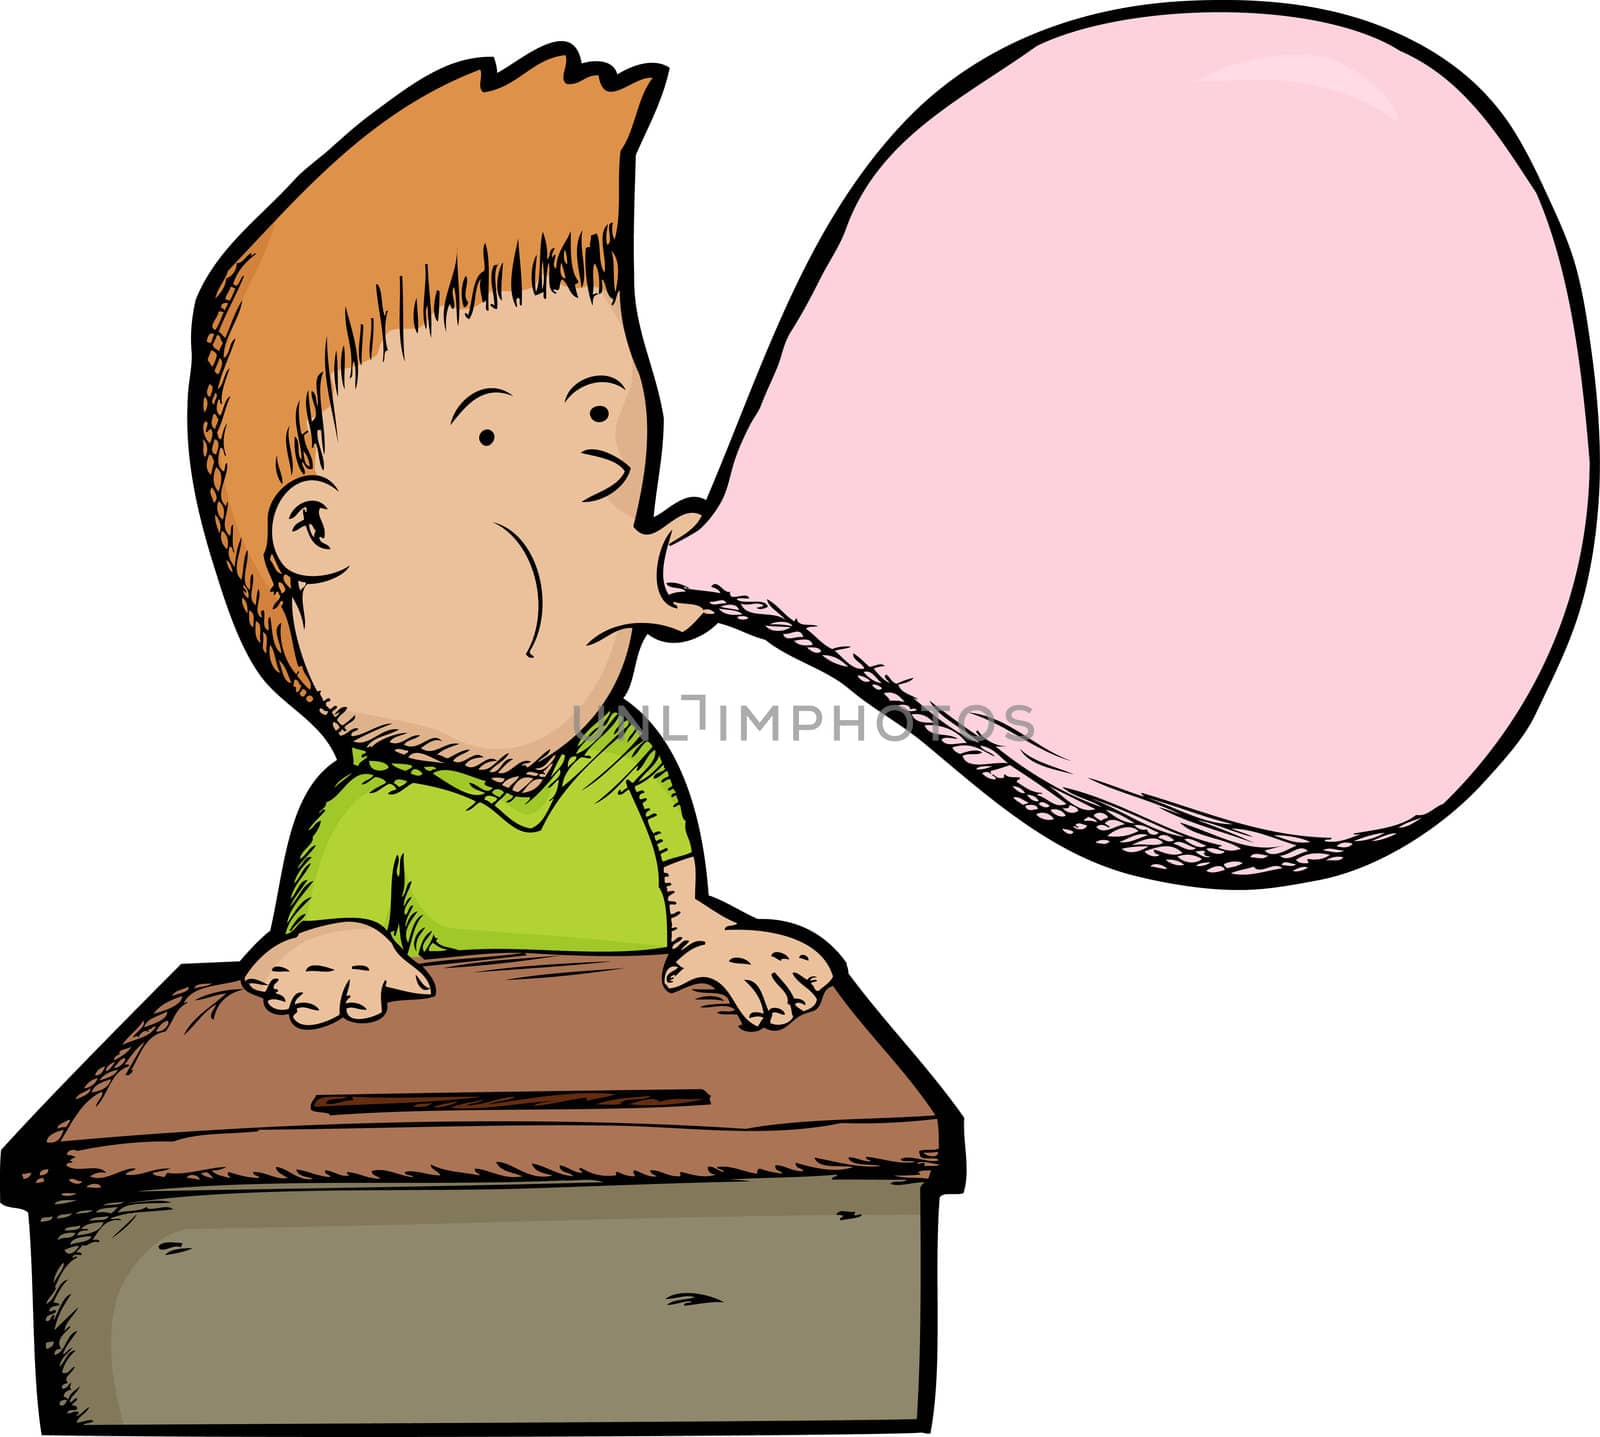 Young boy at desk blows a big gum bubble